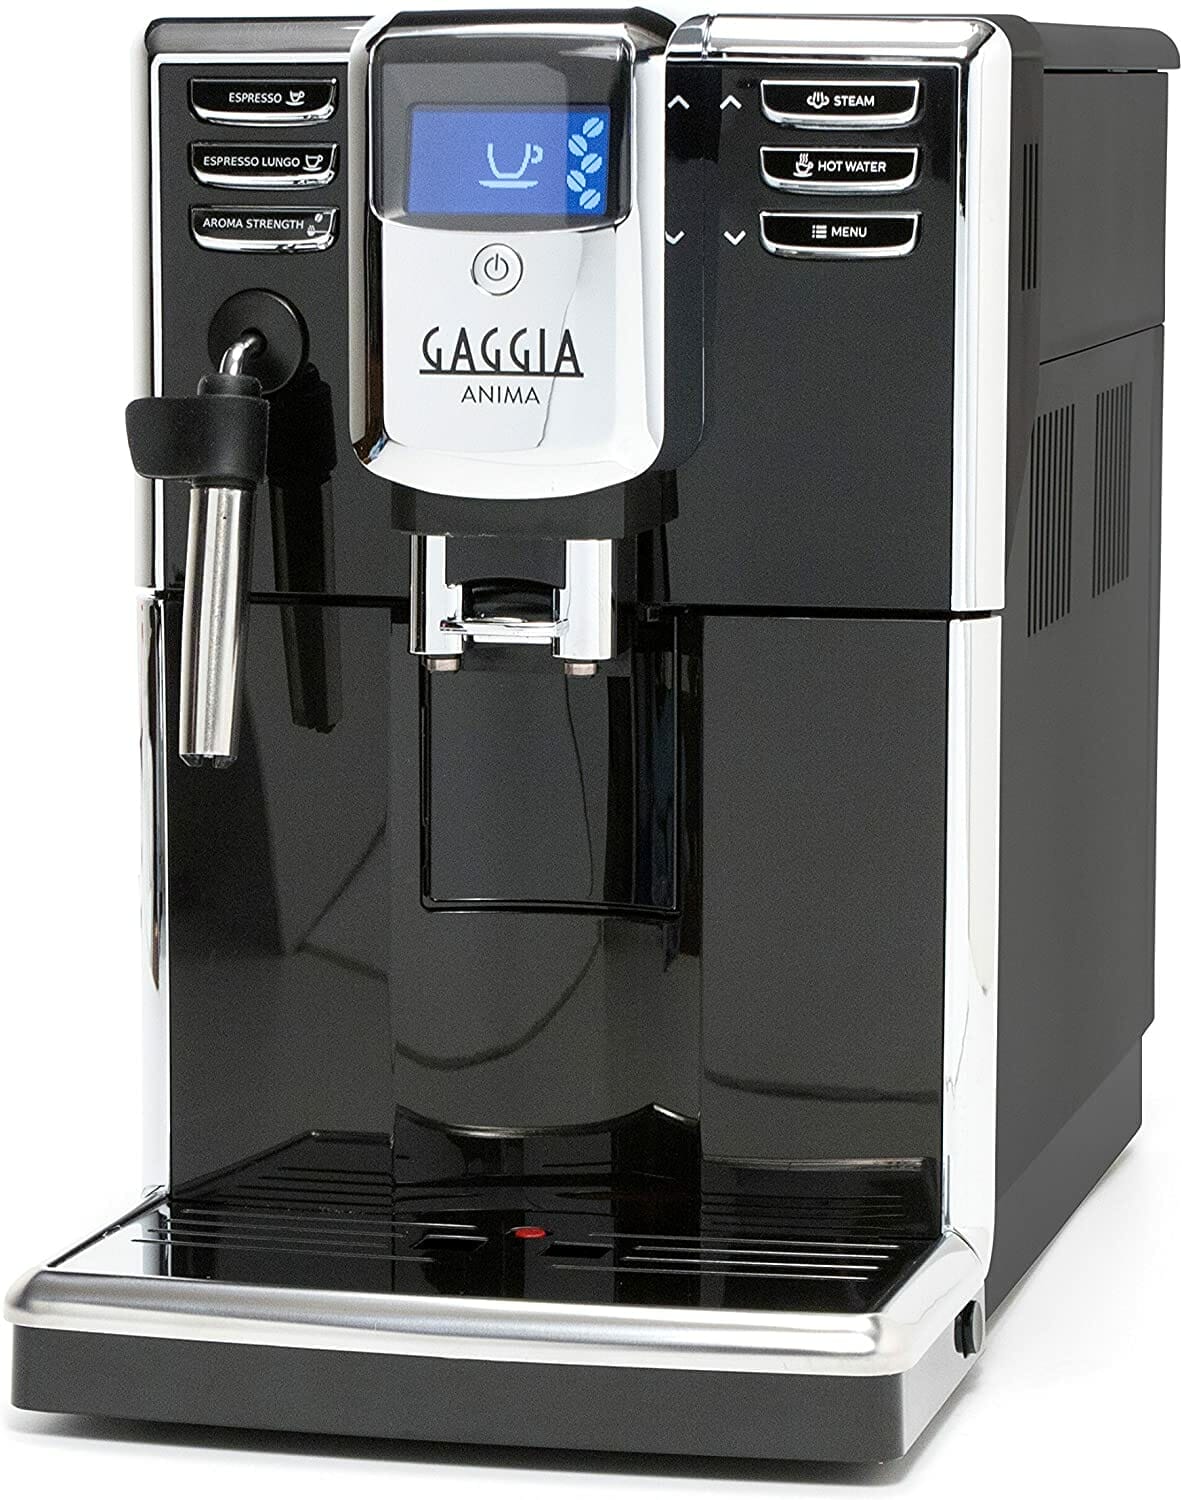 Gaggia Anima Coffee and Espresso Machine Review